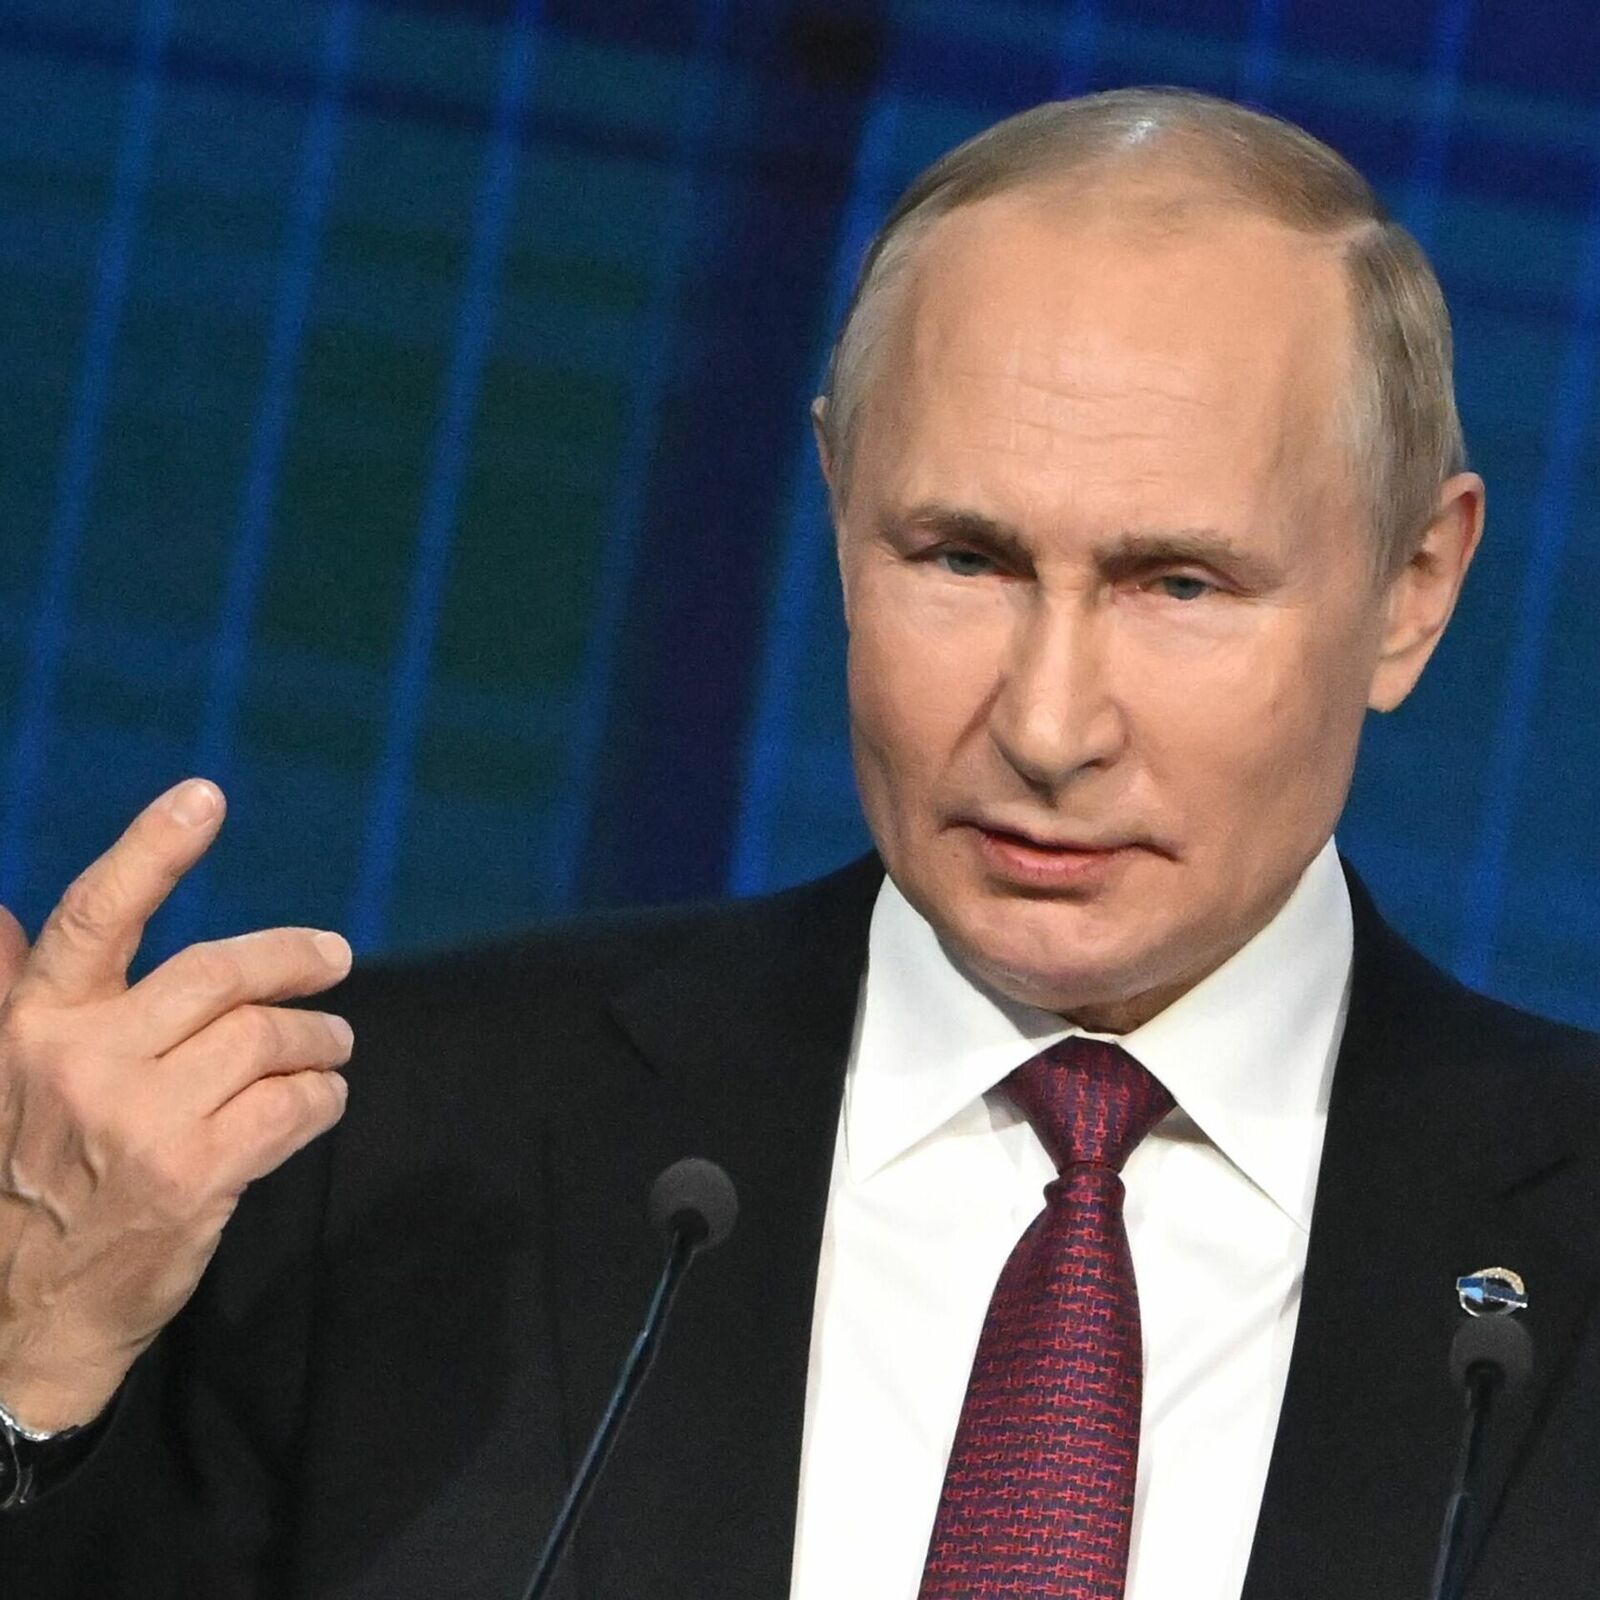 Консолидация при внешнем давлении имеет особое значение, заявил Путин